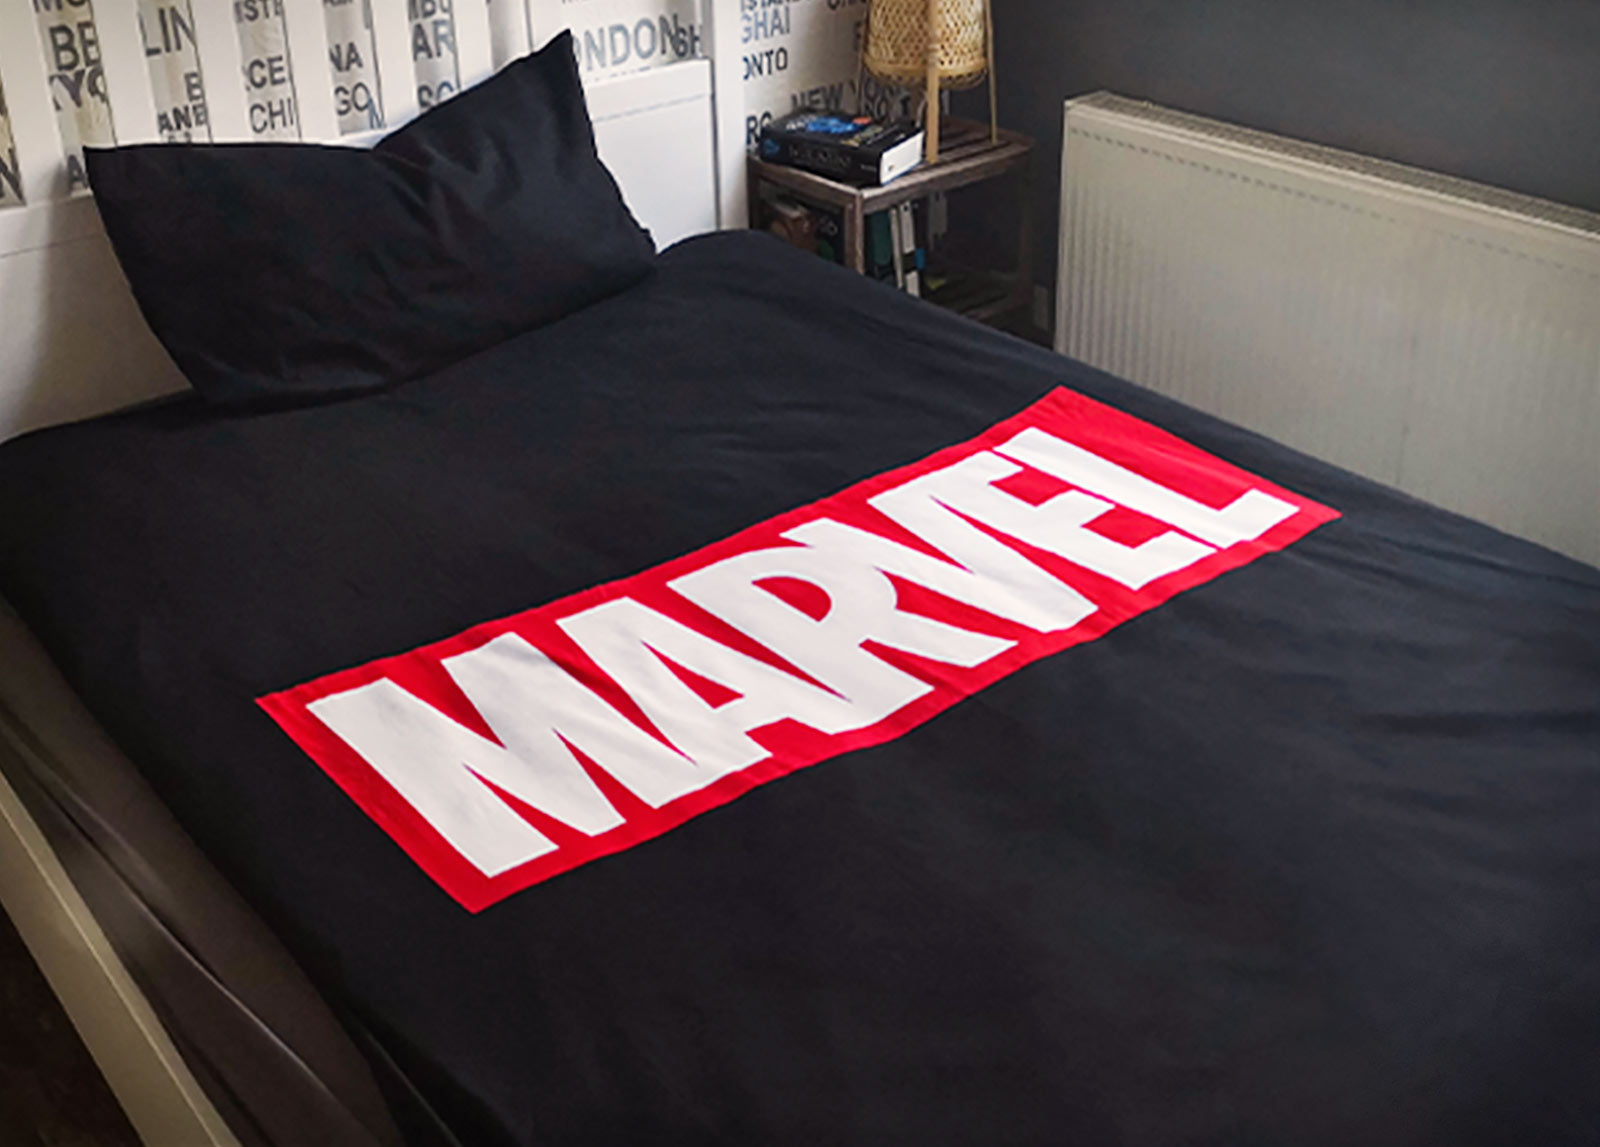 Marvel - Logo Beddengoed